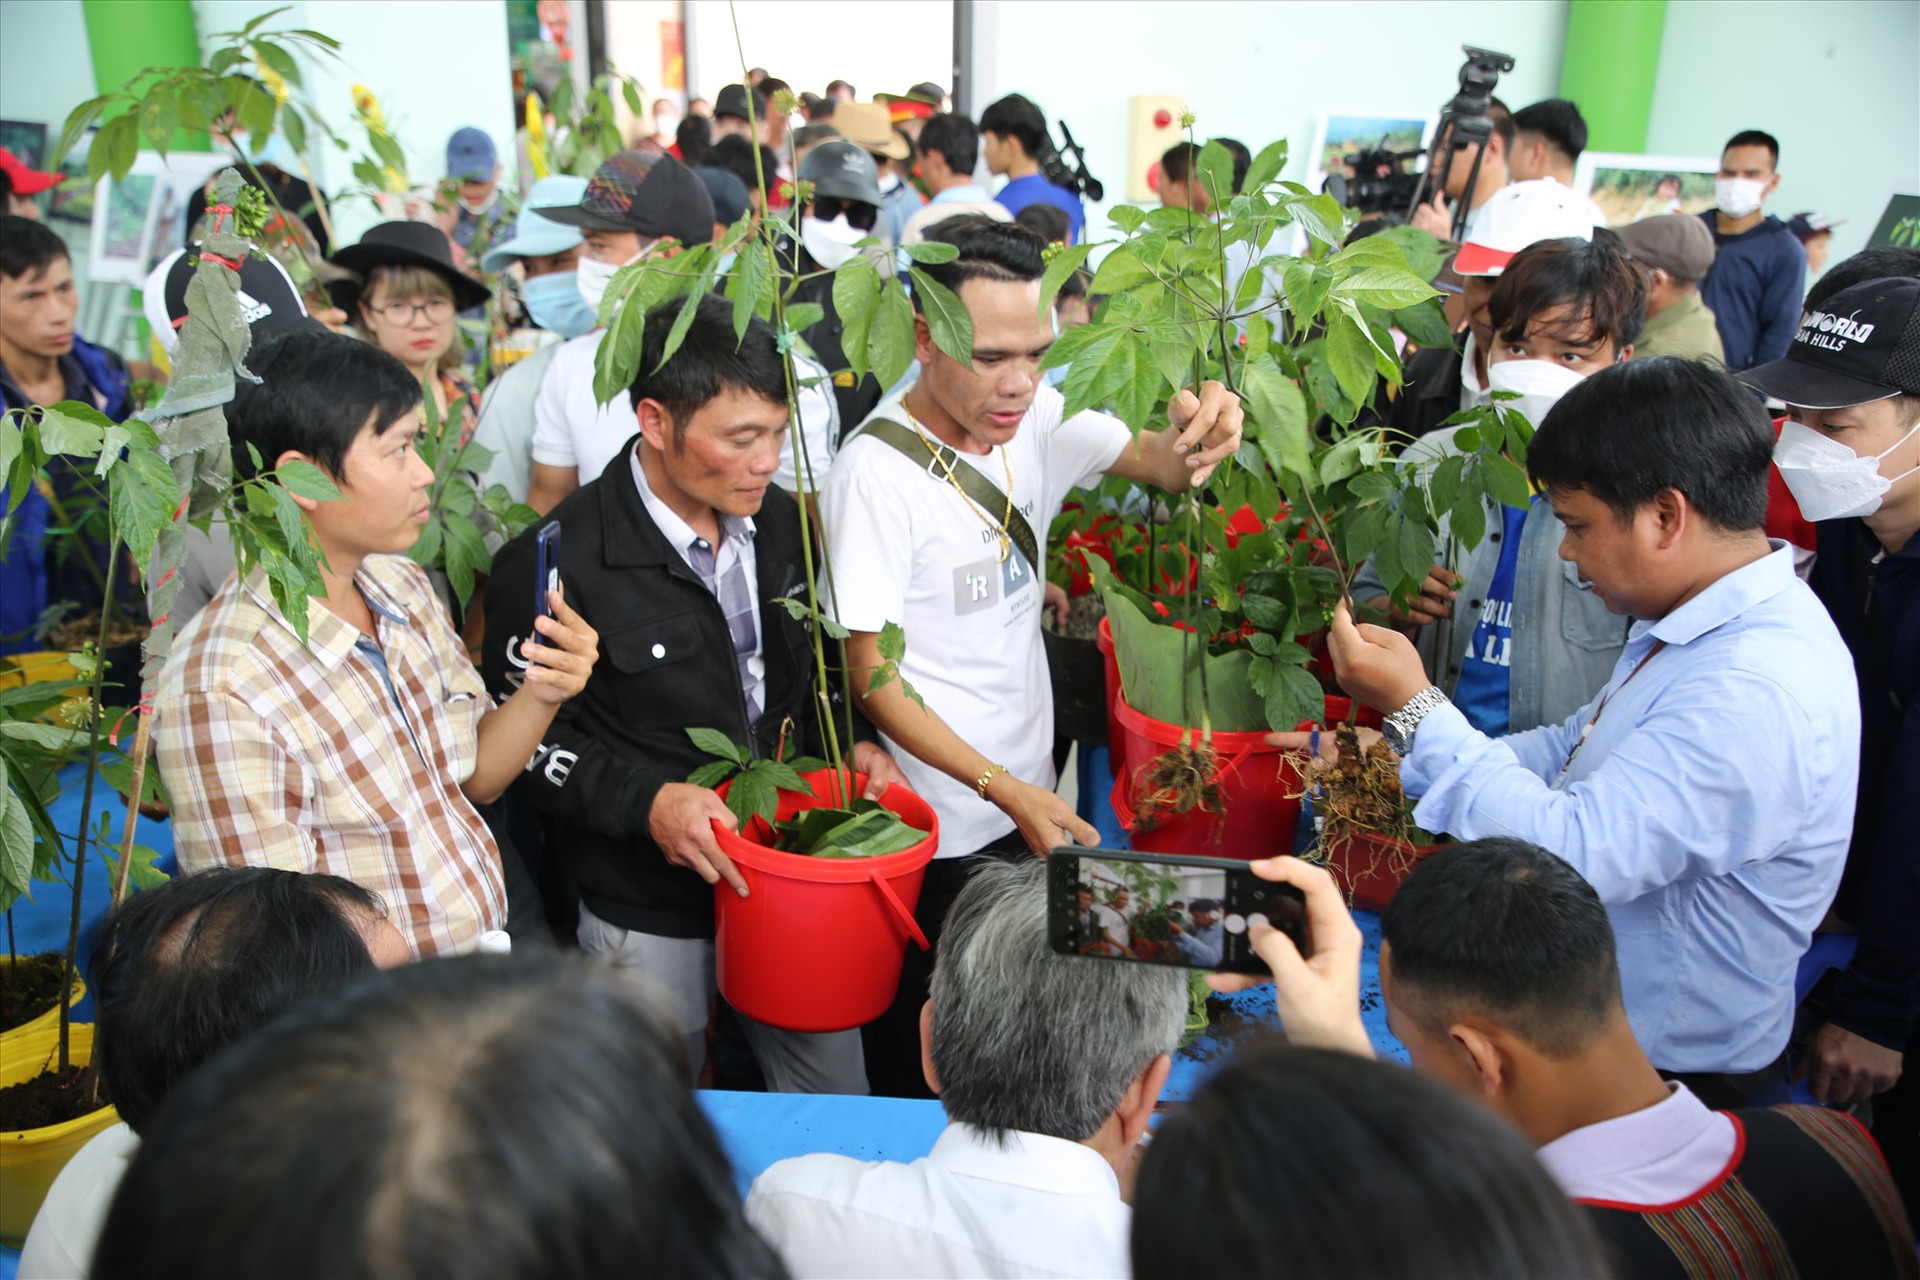 Với 70 hộ trồng sâm tham gia, hội thi sâm Ngọc Linh năm nay được xem là kỷ lục từ trước đến nay. Ảnh: A.N